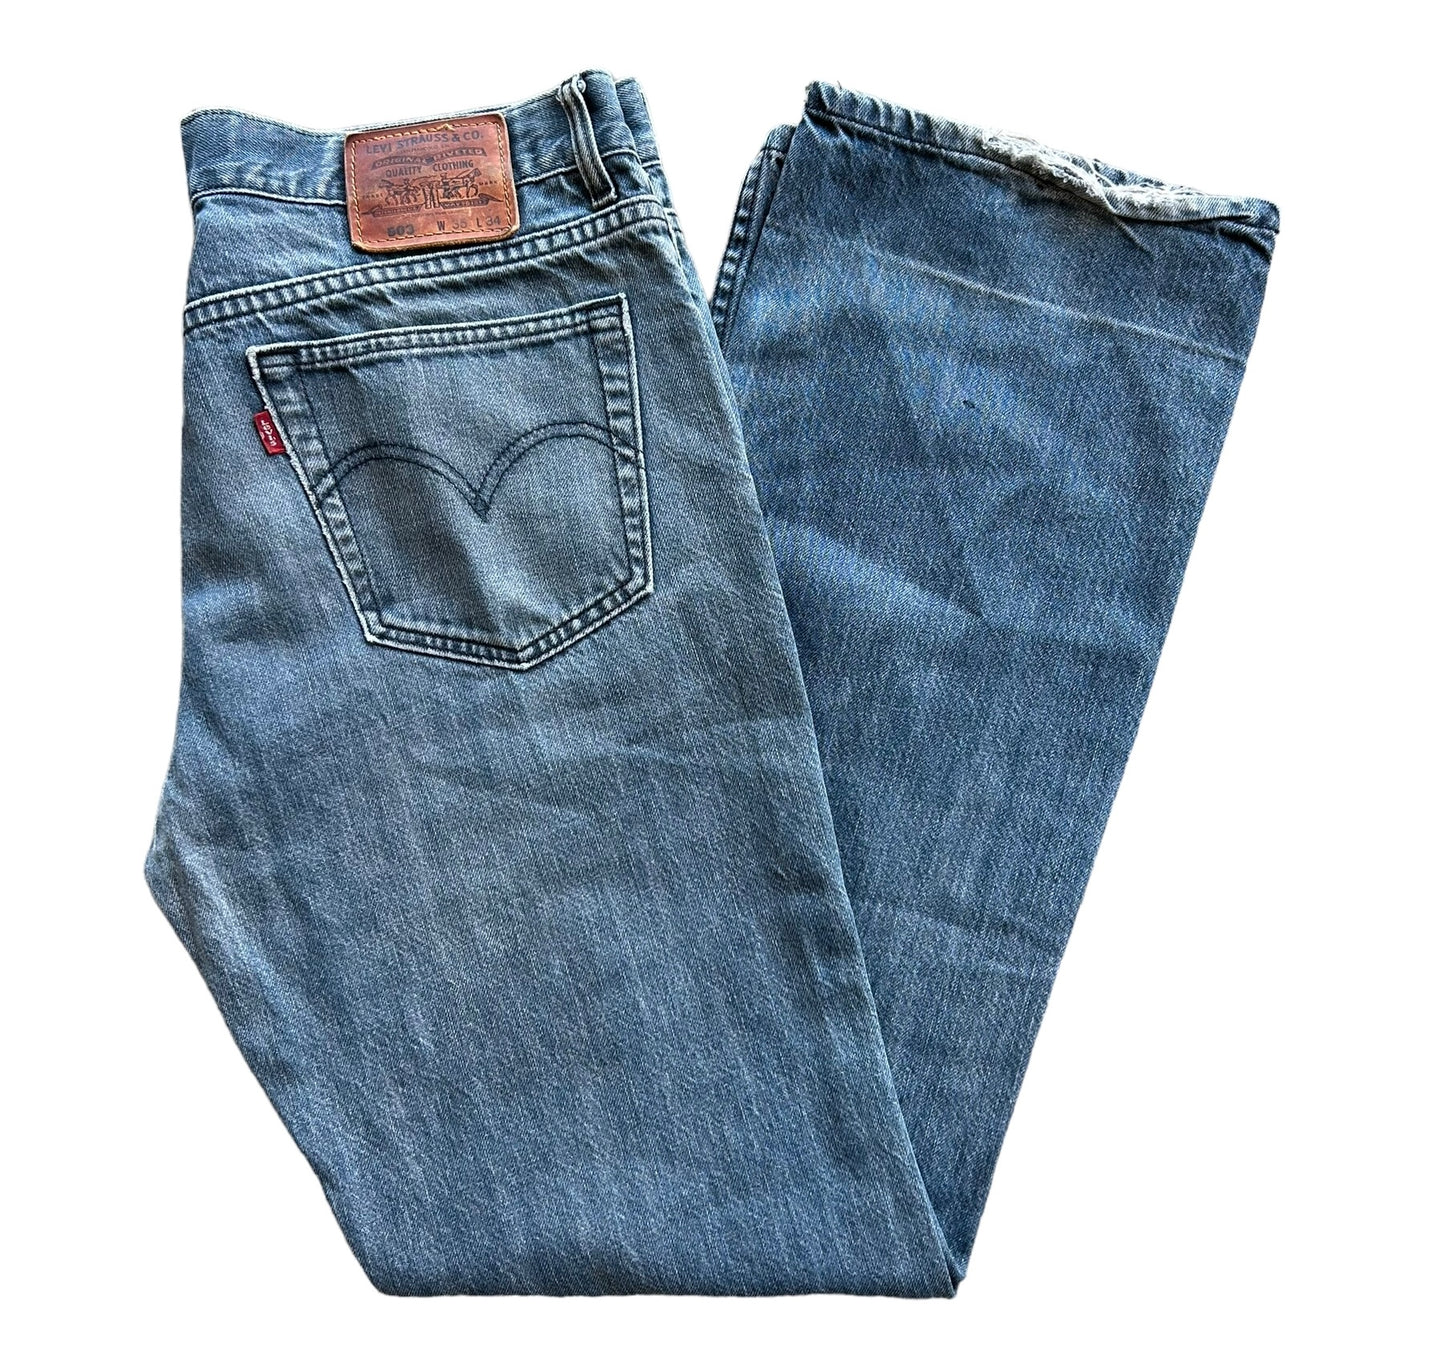 Vintage Levis 503 Denim Jeans